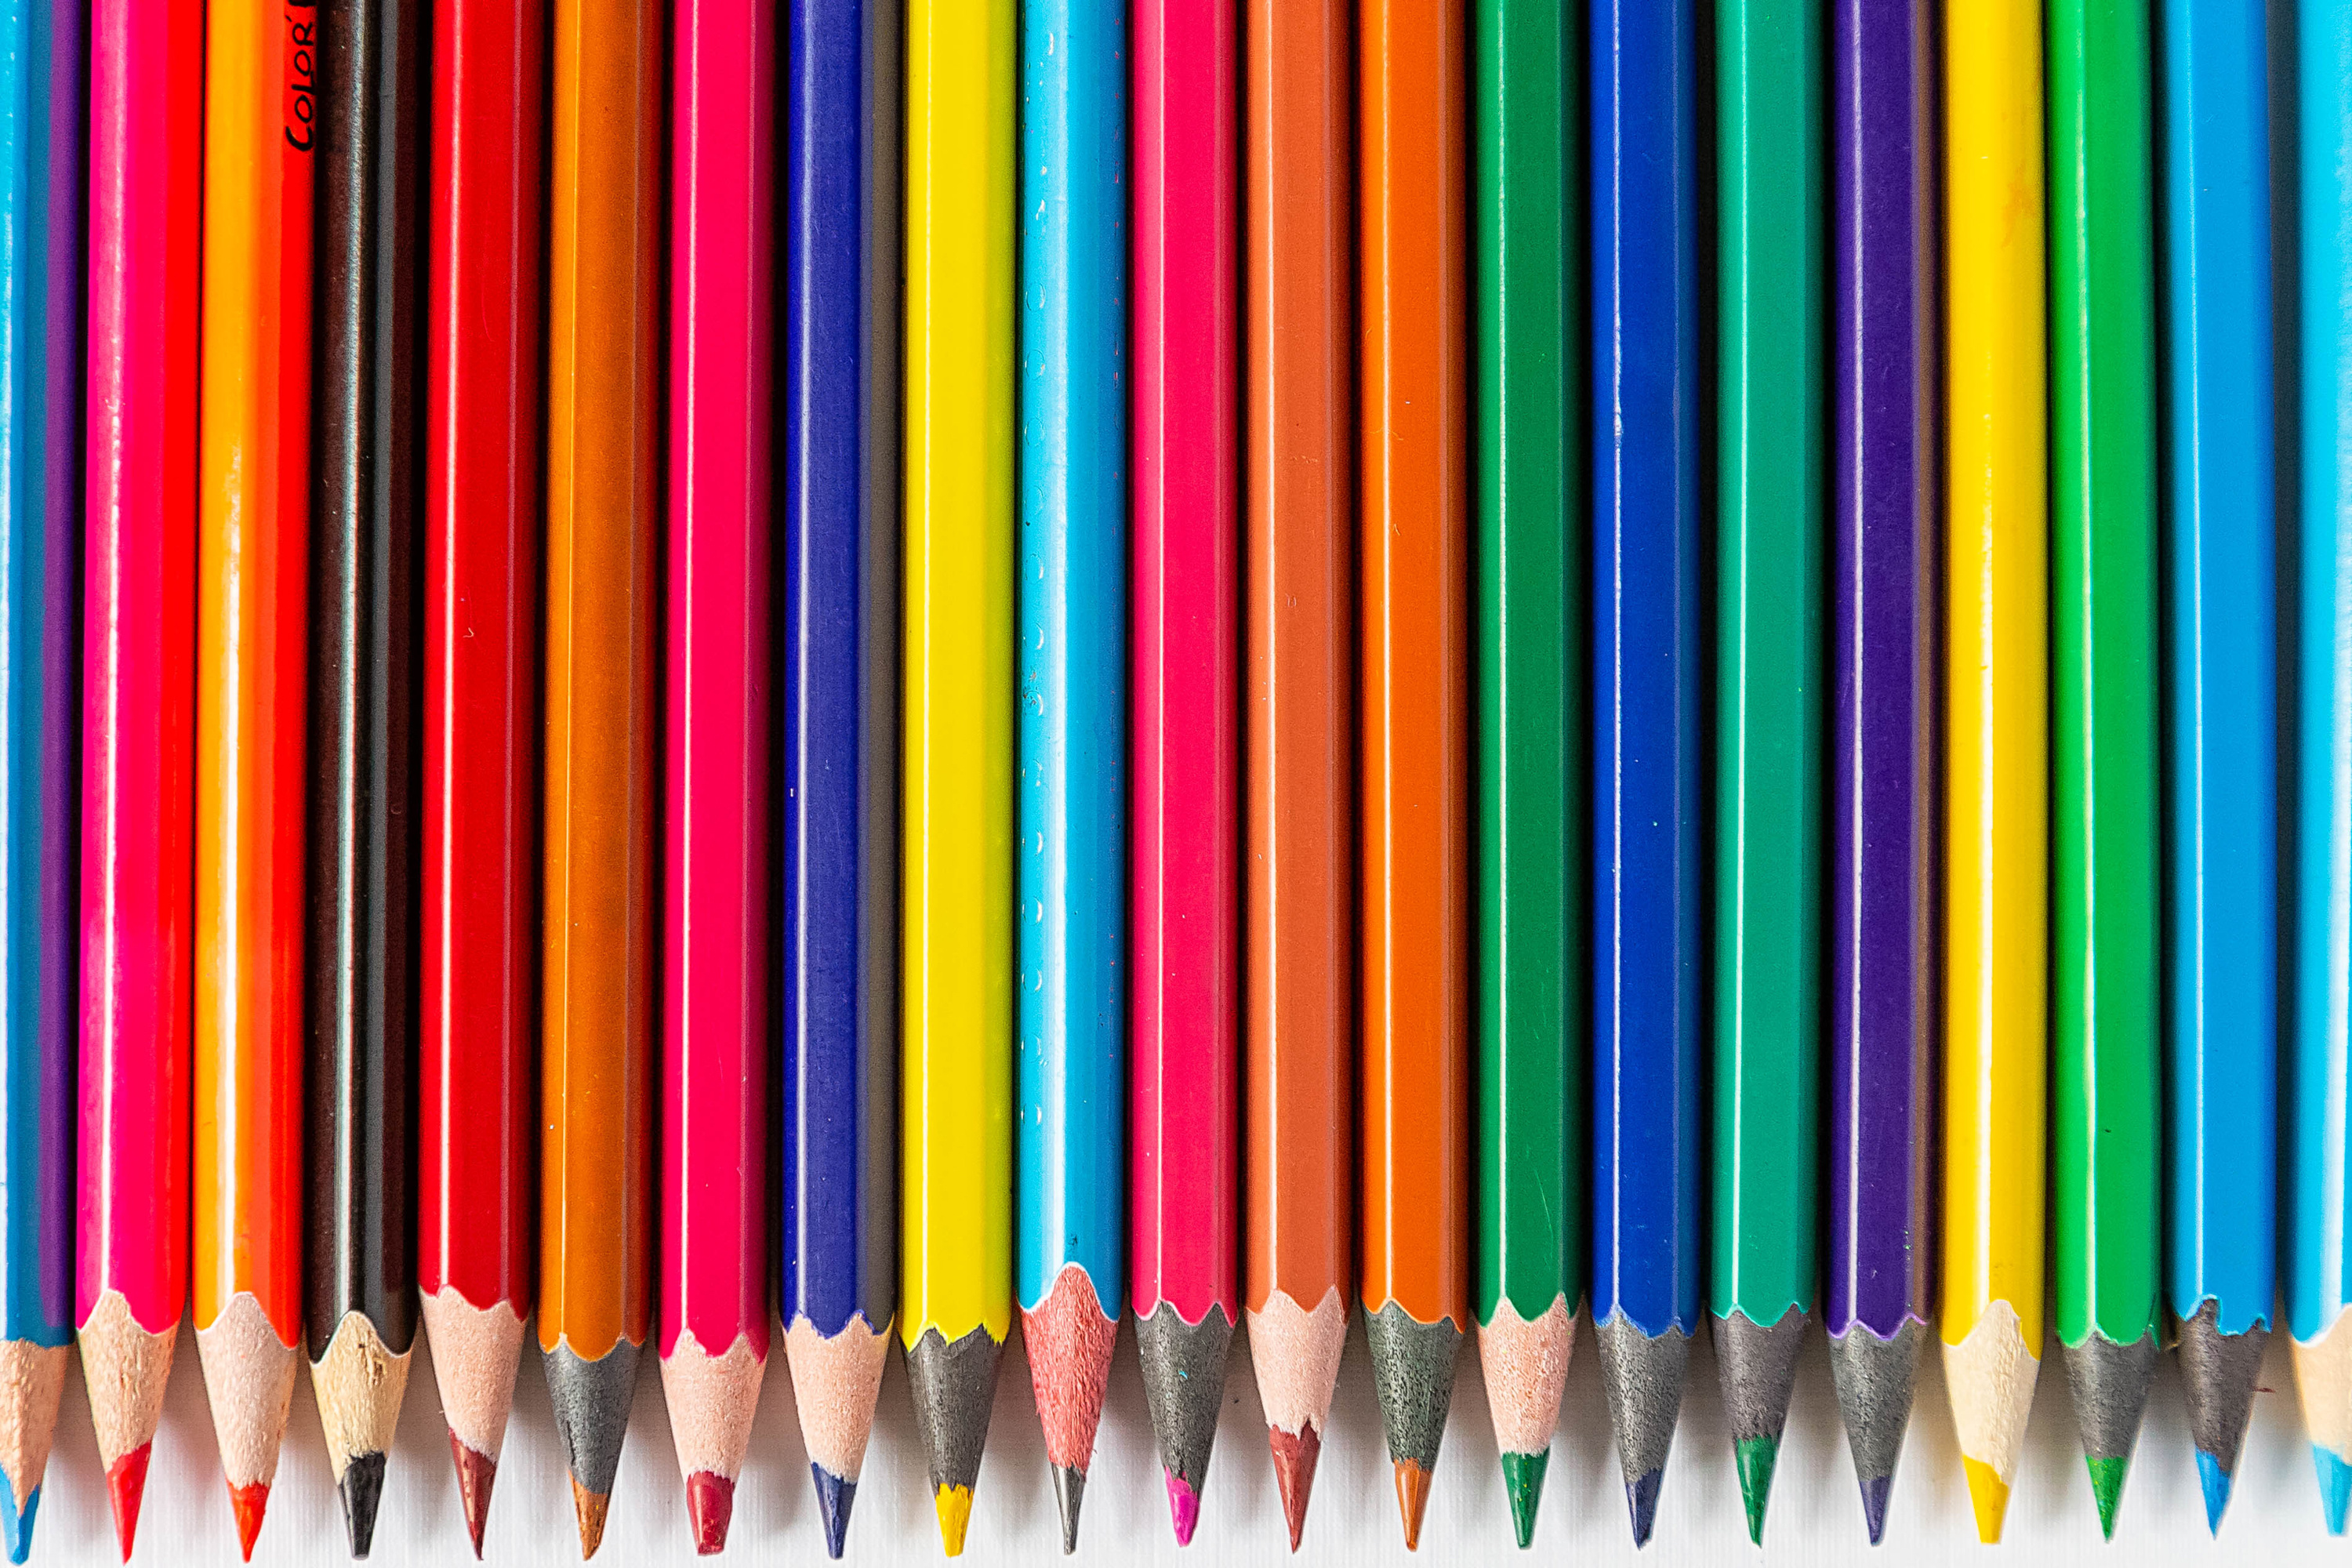 Яркие цветные карандаши